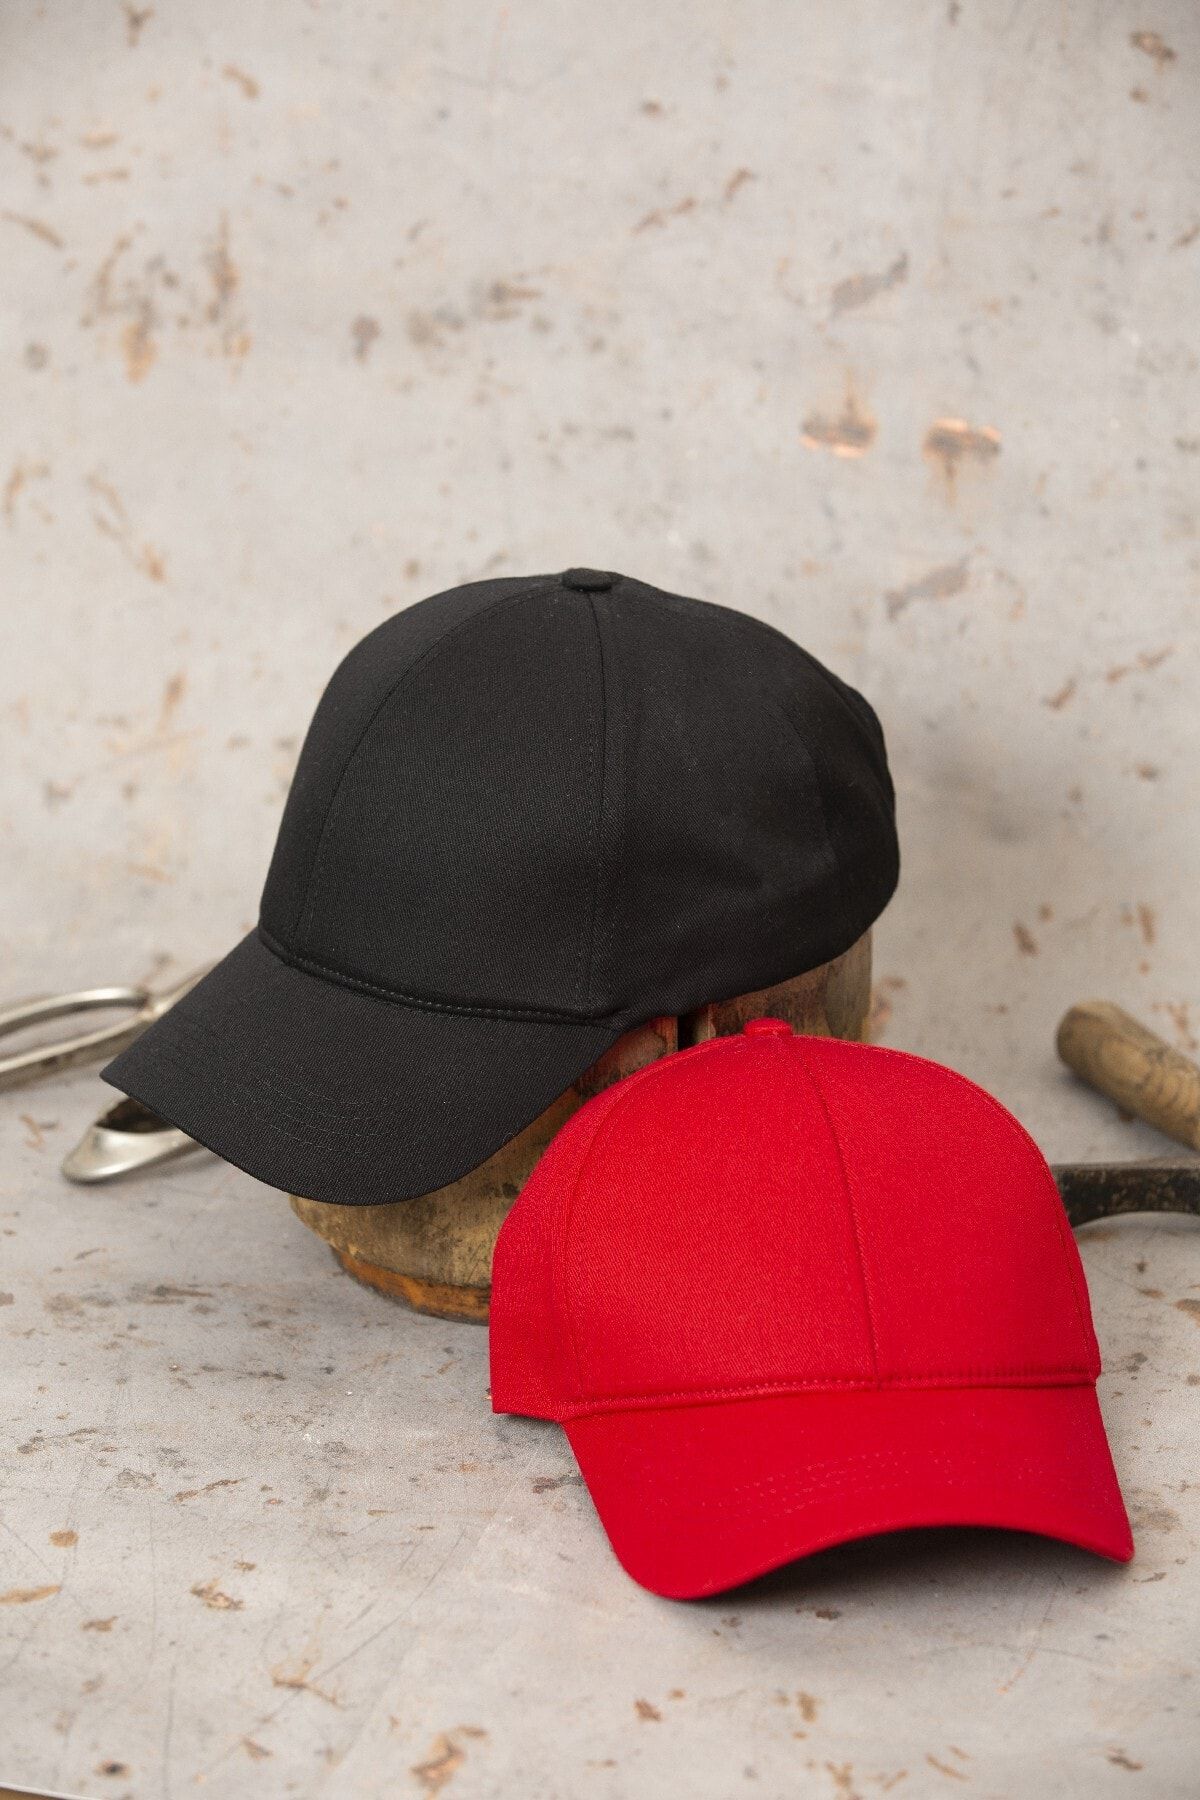 ÜN ŞAPKA Ikili Fırsat Ürünü - Siyah Ve Kırmızı Şapka